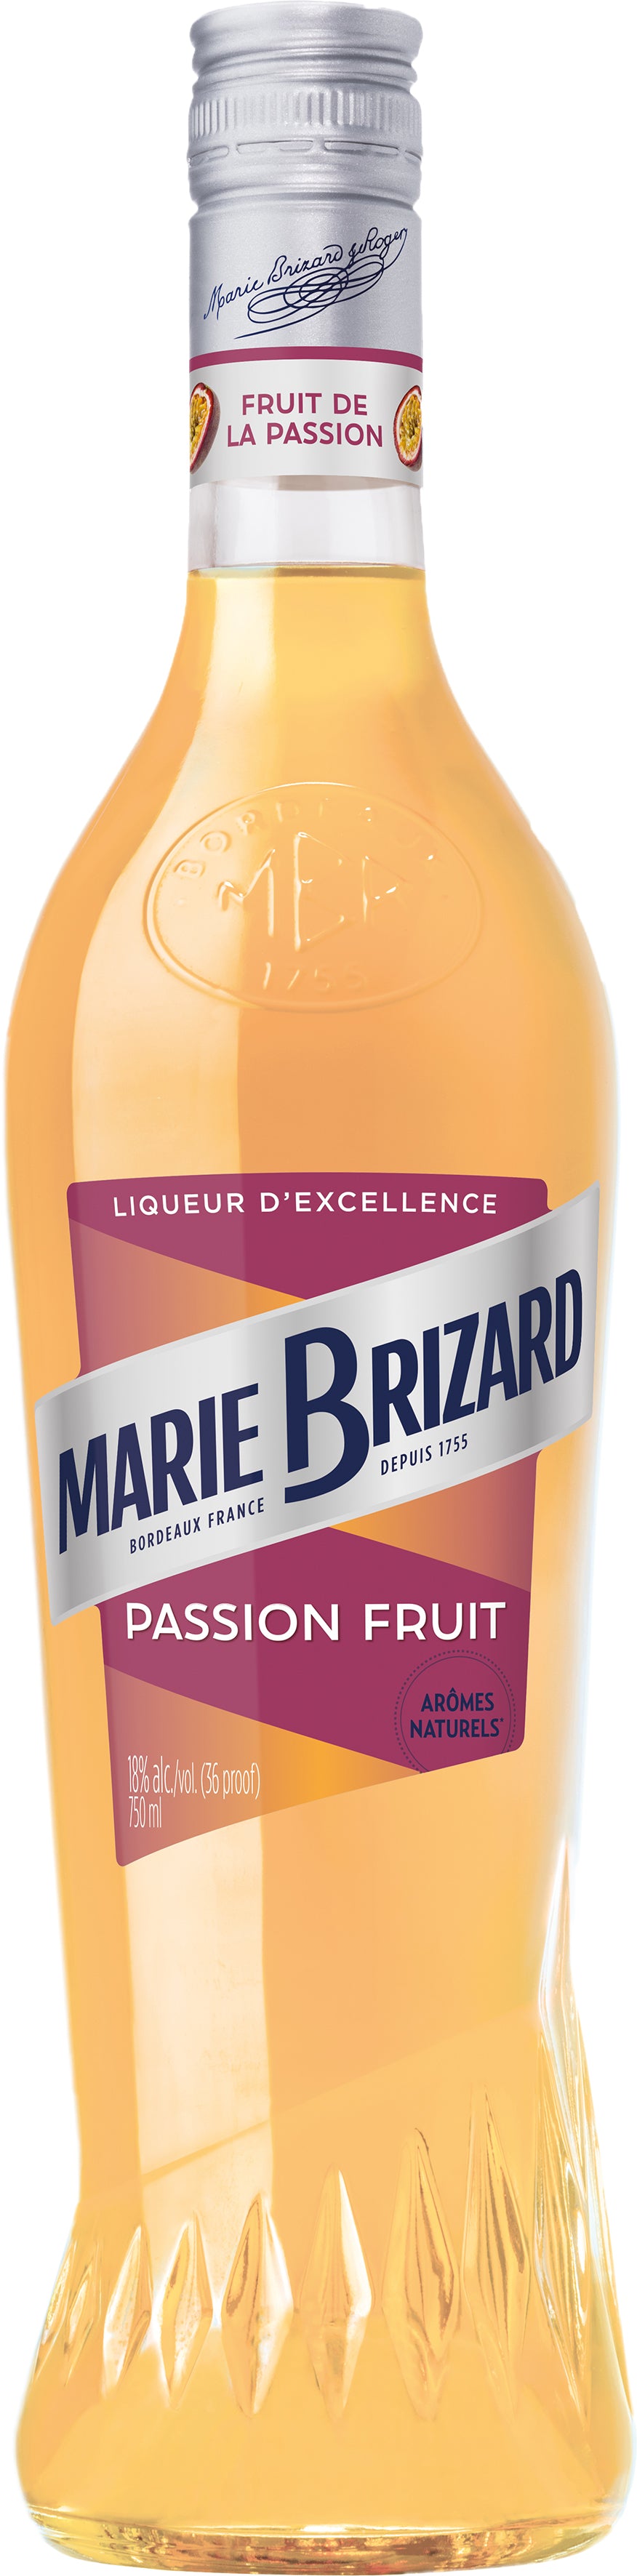 BUY] Marie Brizard Fruit De La Passion Liqueur at